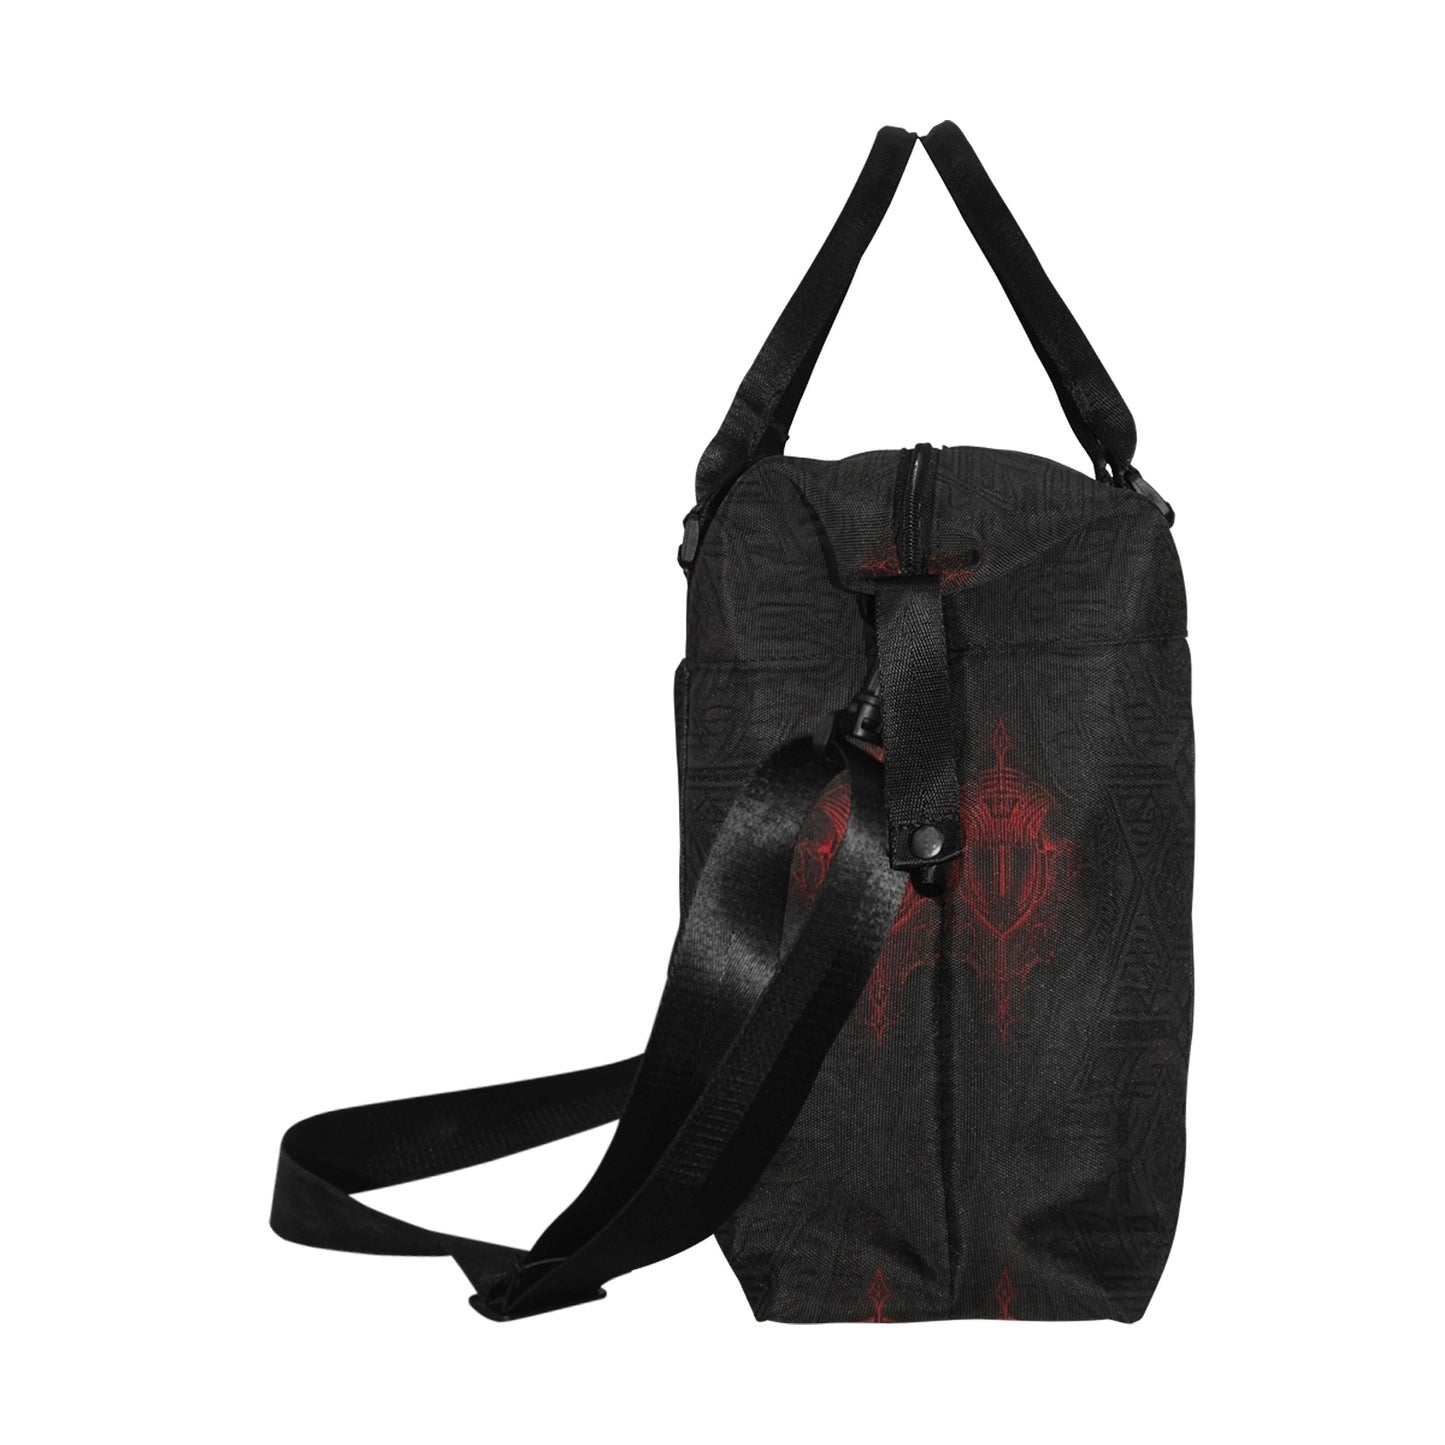 Prime Demon Large Capacity Duffle Bag